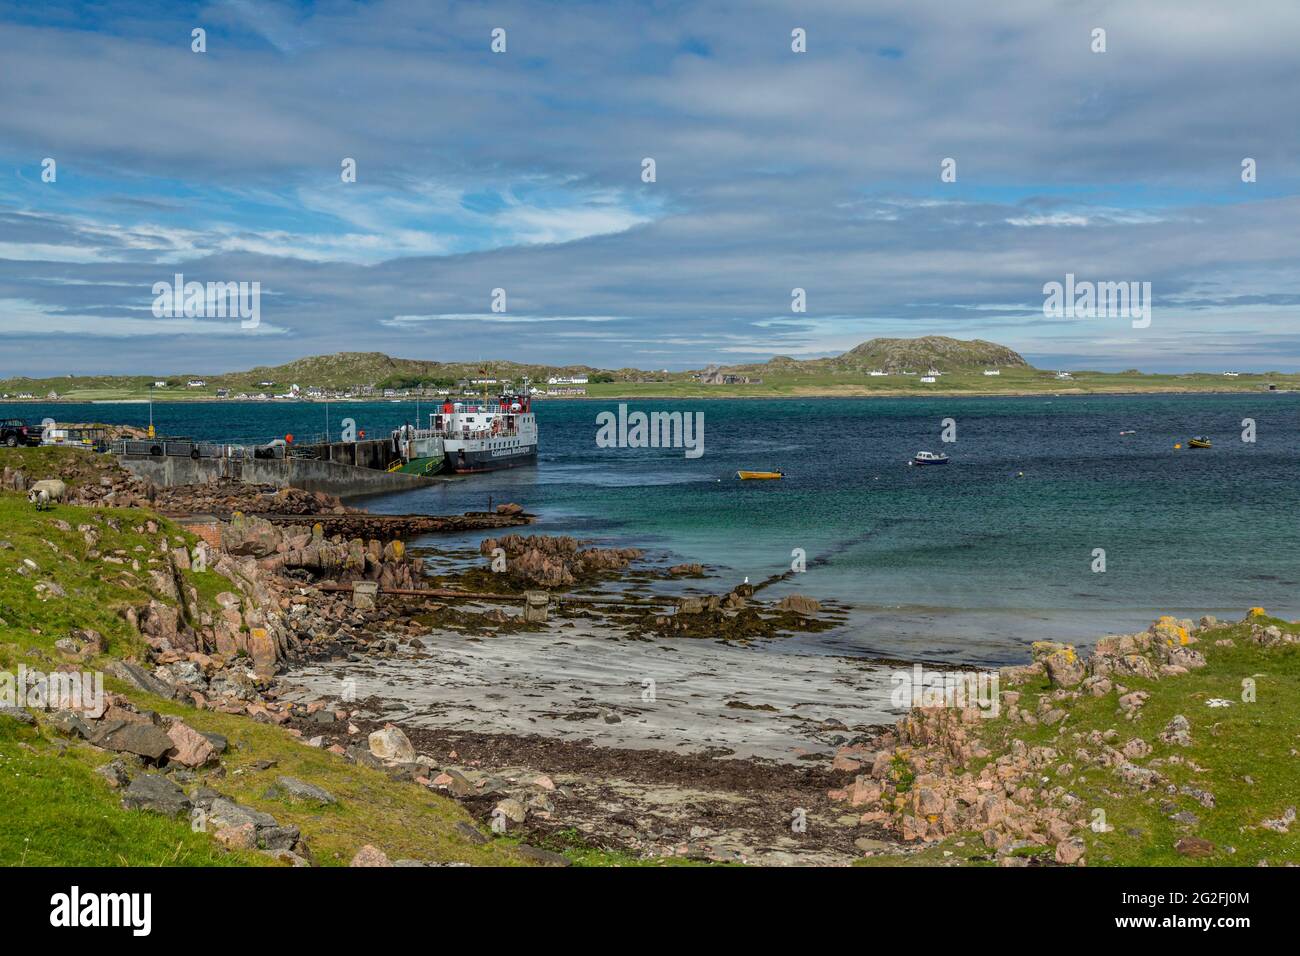 Eine kaledonische MacBrayne-Fähre am Fährhafen Fionnphort auf der Isle of Mull, Inner Hebrides, Schottland. Die Insel Iona in der Ferne. Stockfoto